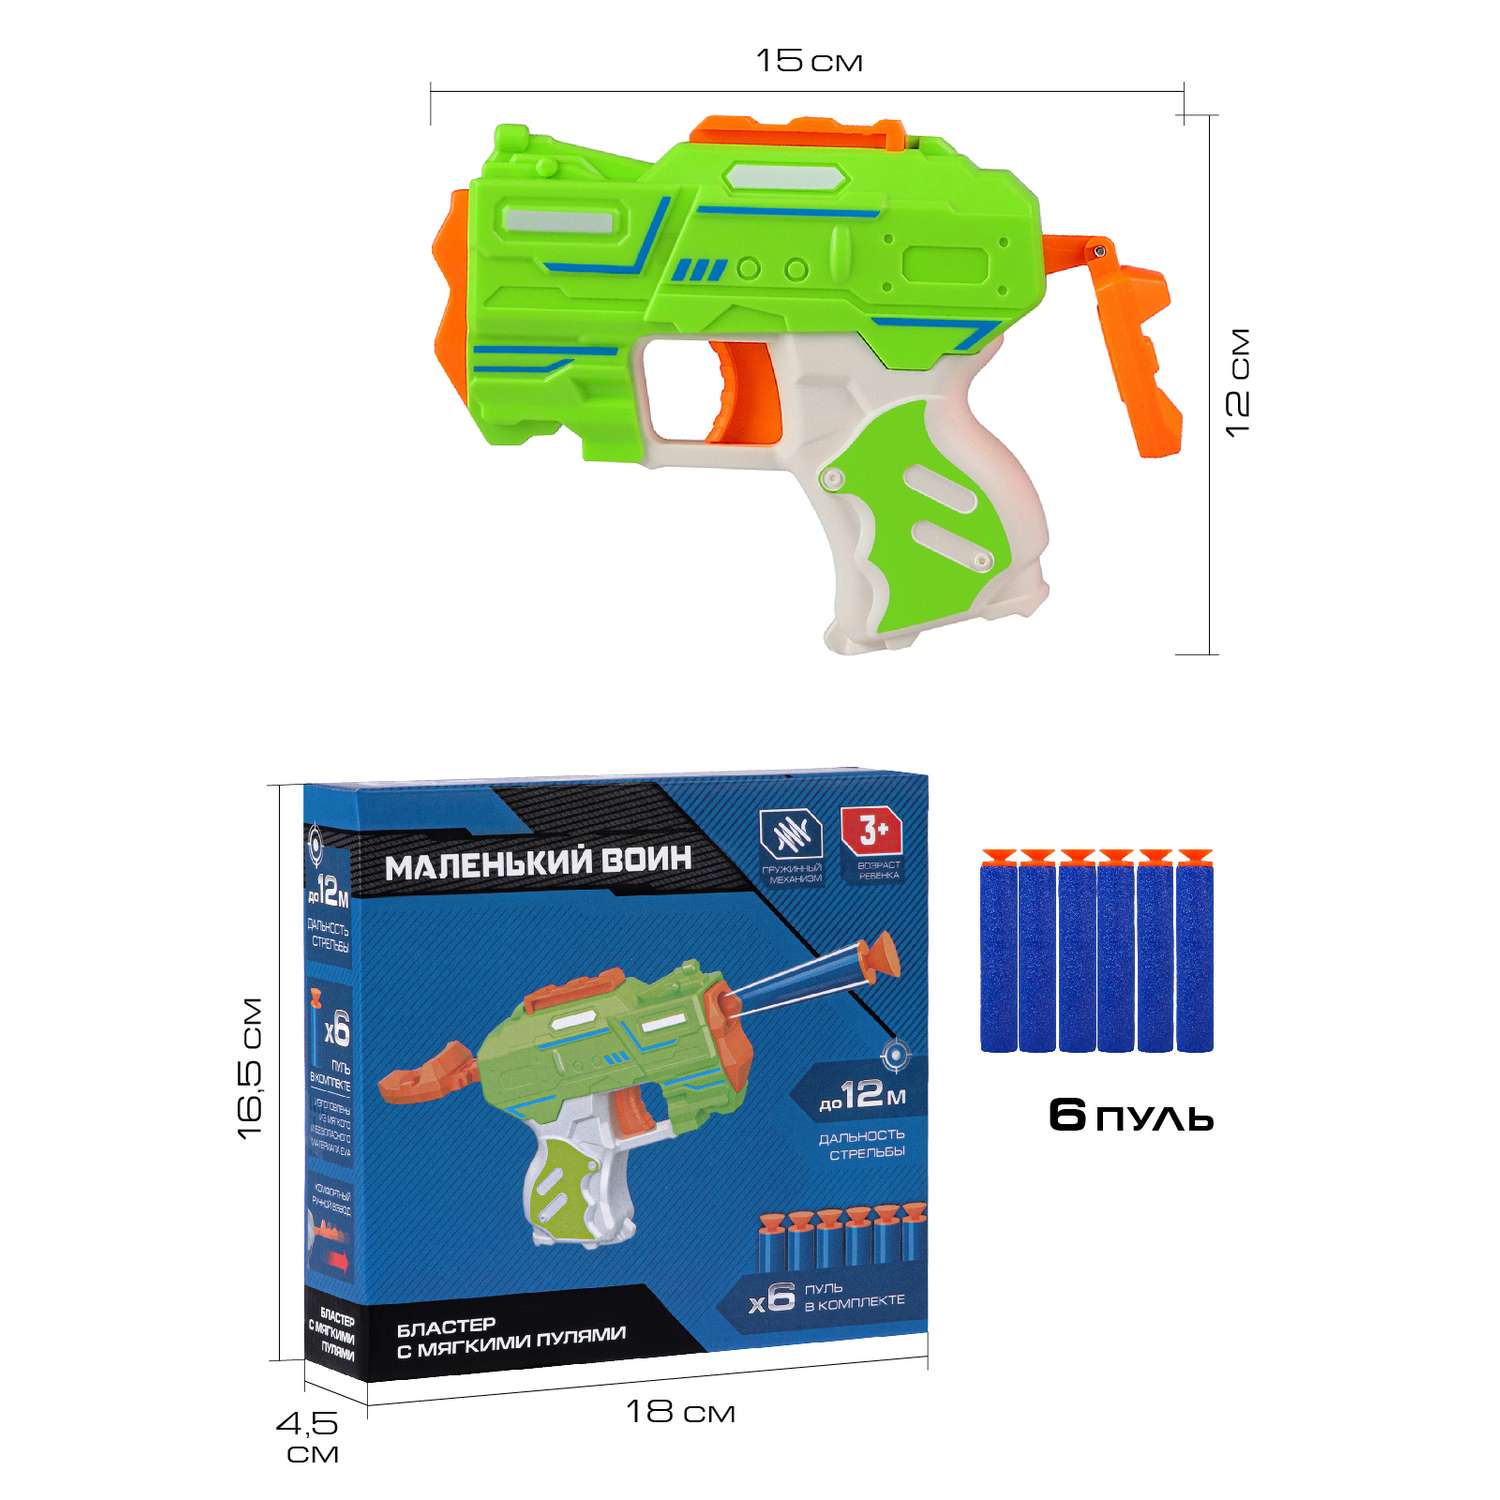 Игрушечное оружие Маленький Воин Бластер с мягкими пулями ручной затвор JB0211465 - фото 2